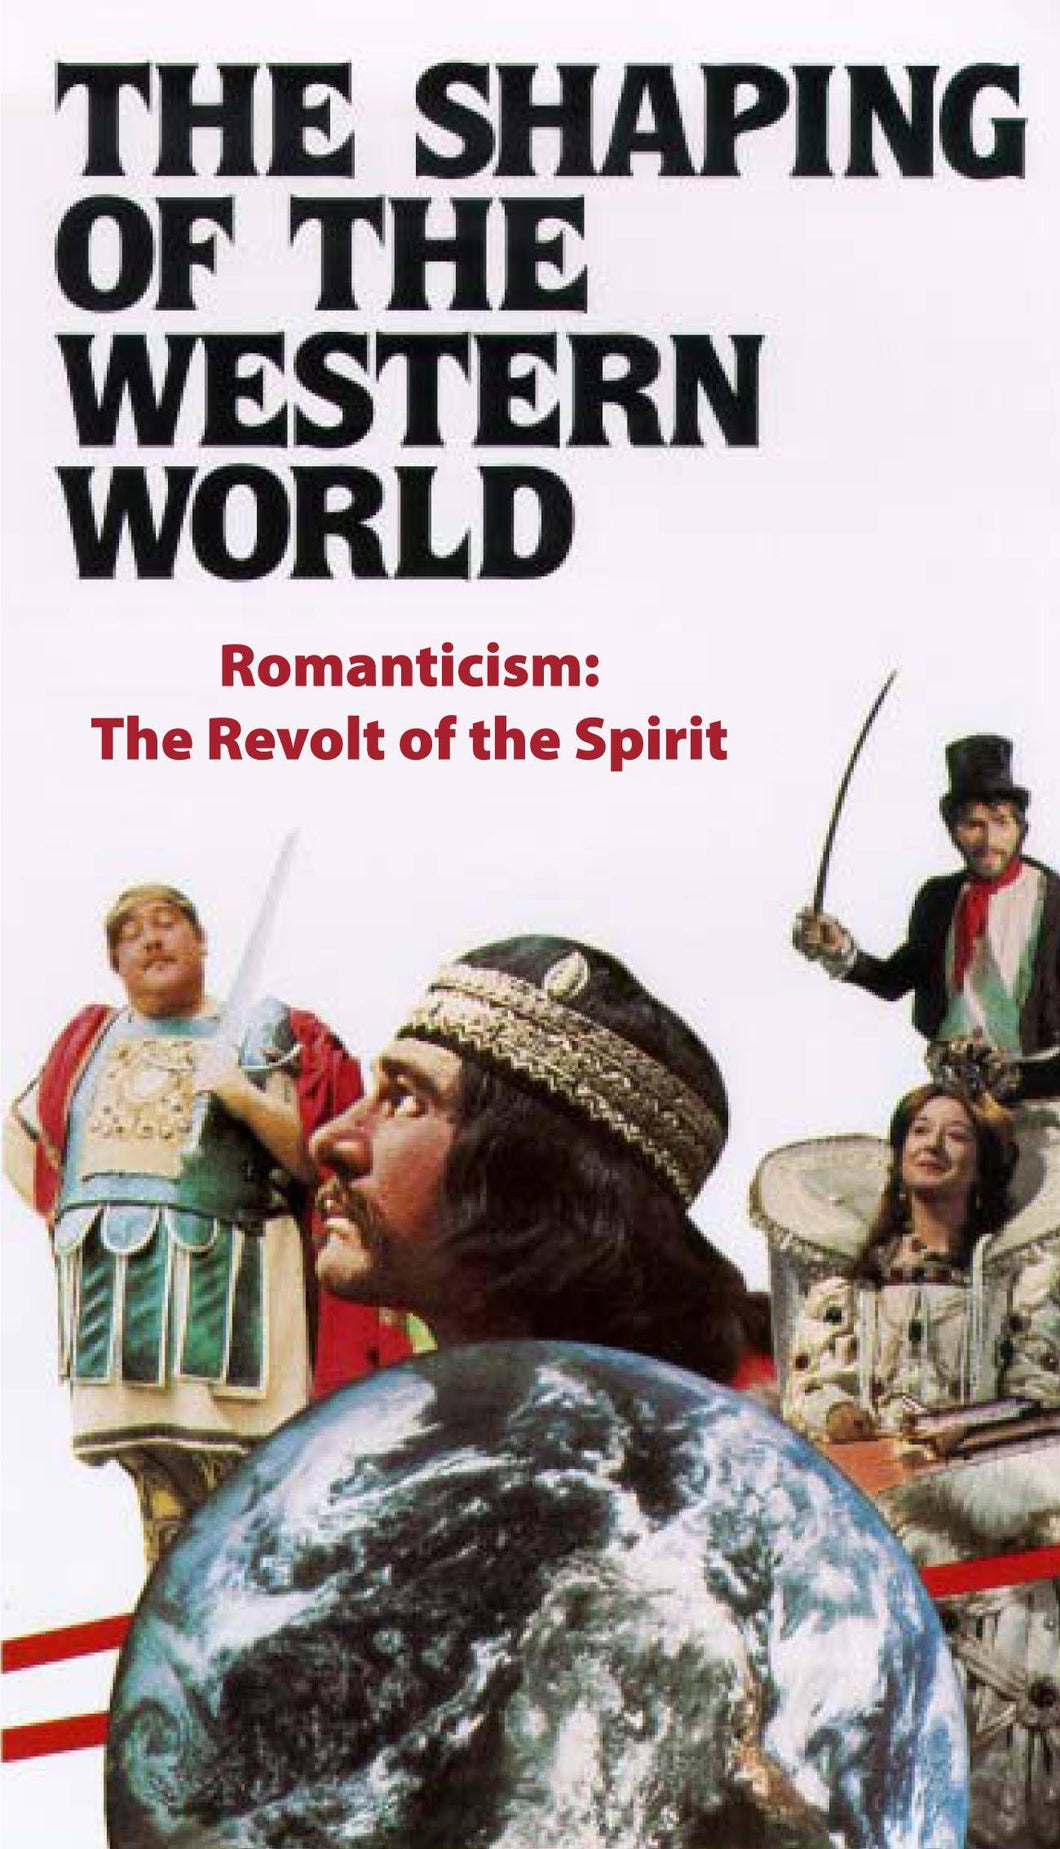 Romanticism: Revolt of the Spirit